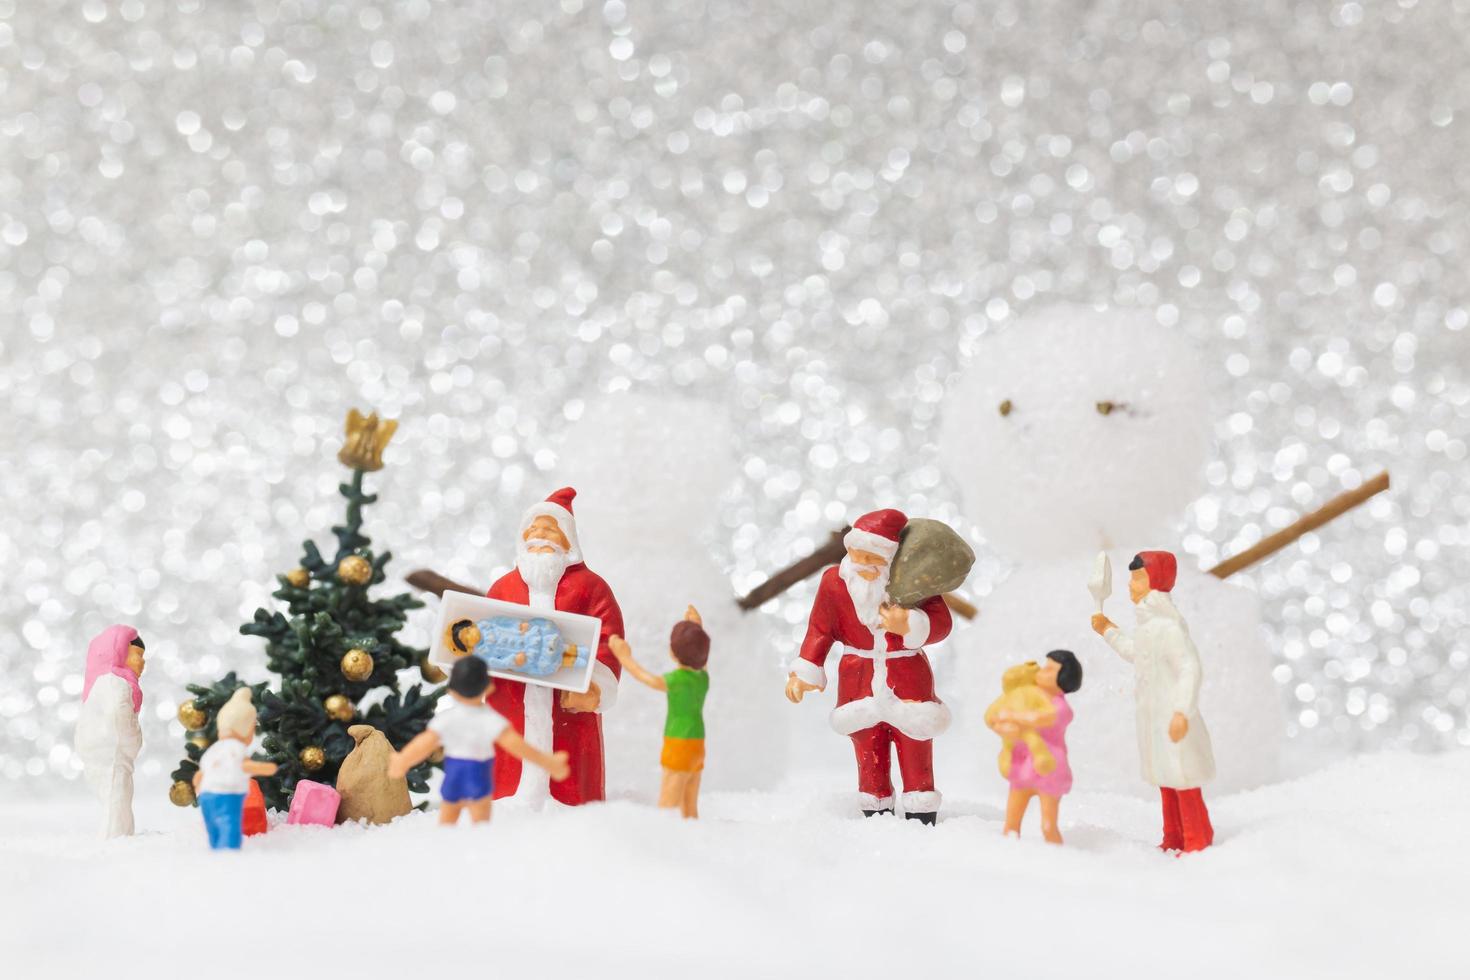 miniatuur kerstman en kinderen met een sneeuw achtergrond, kerstmis en een gelukkig nieuwjaar concept foto